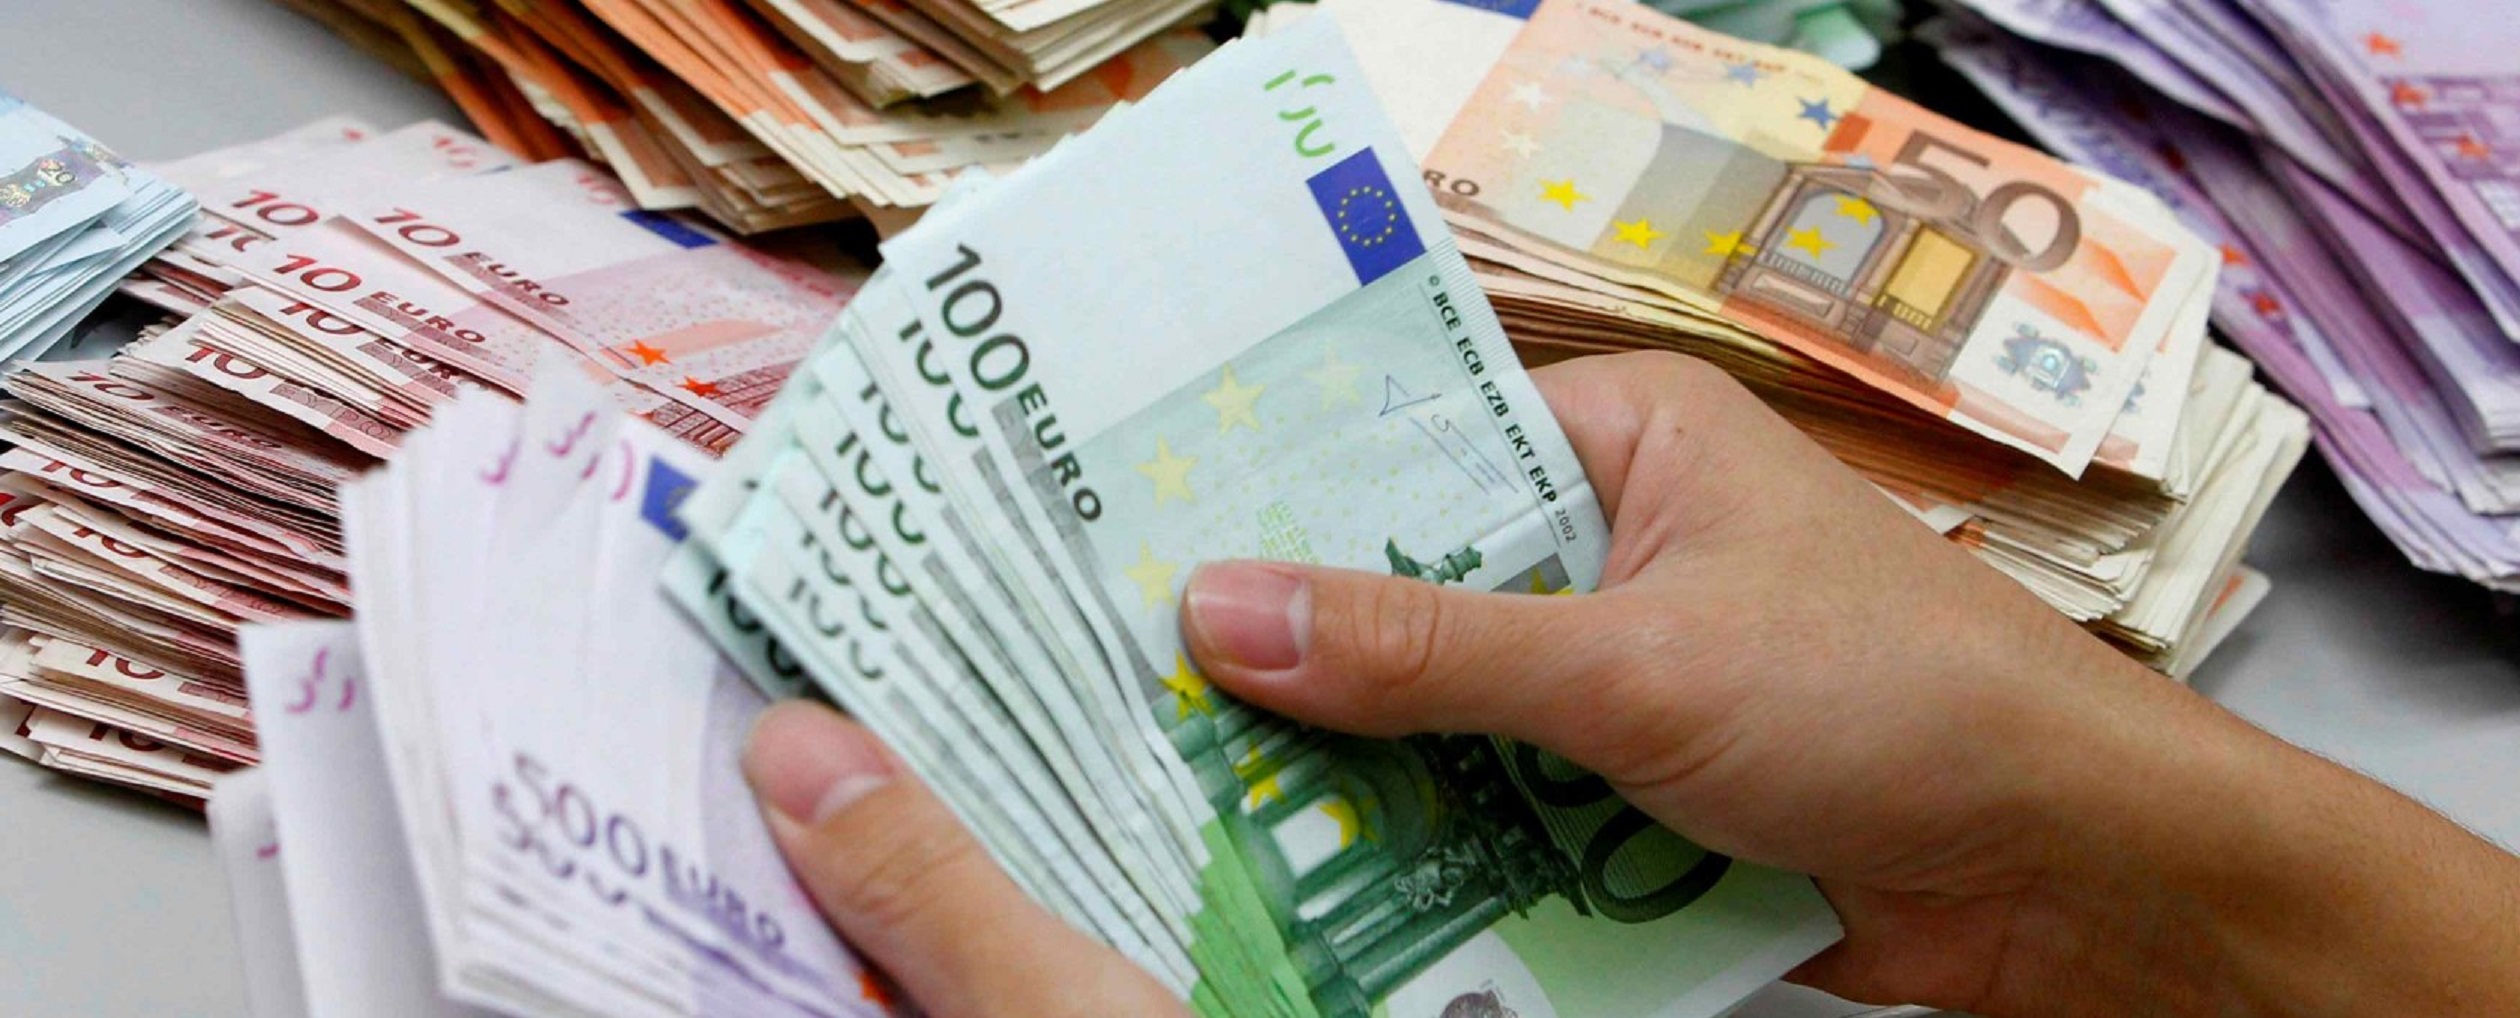 In aumento in provincia le banconote false: occhio ai tagli da 50 euro